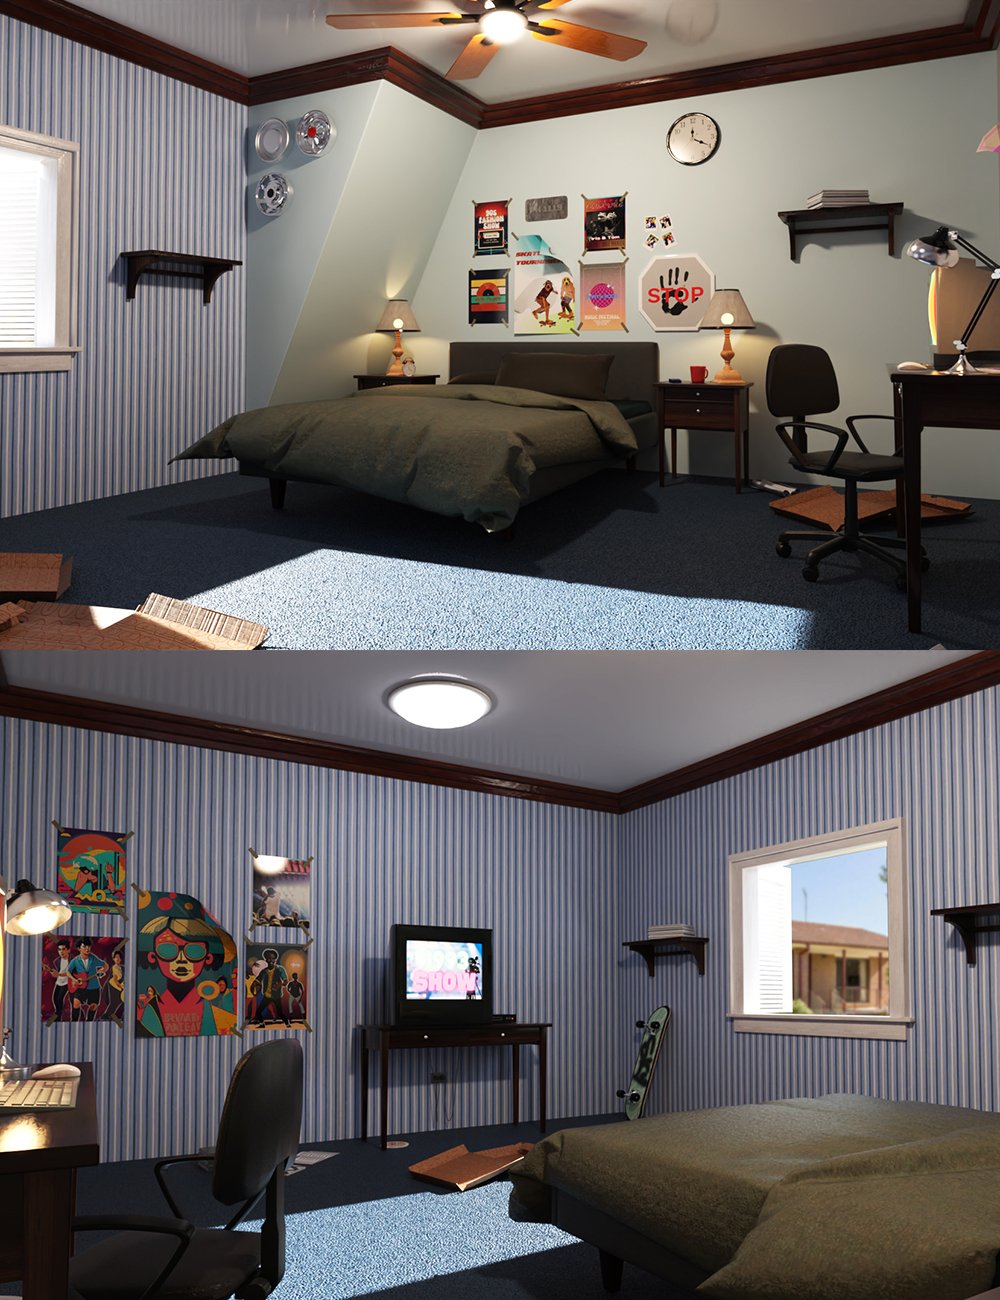 90s Room by: bituka3d, 3D Models by Daz 3D